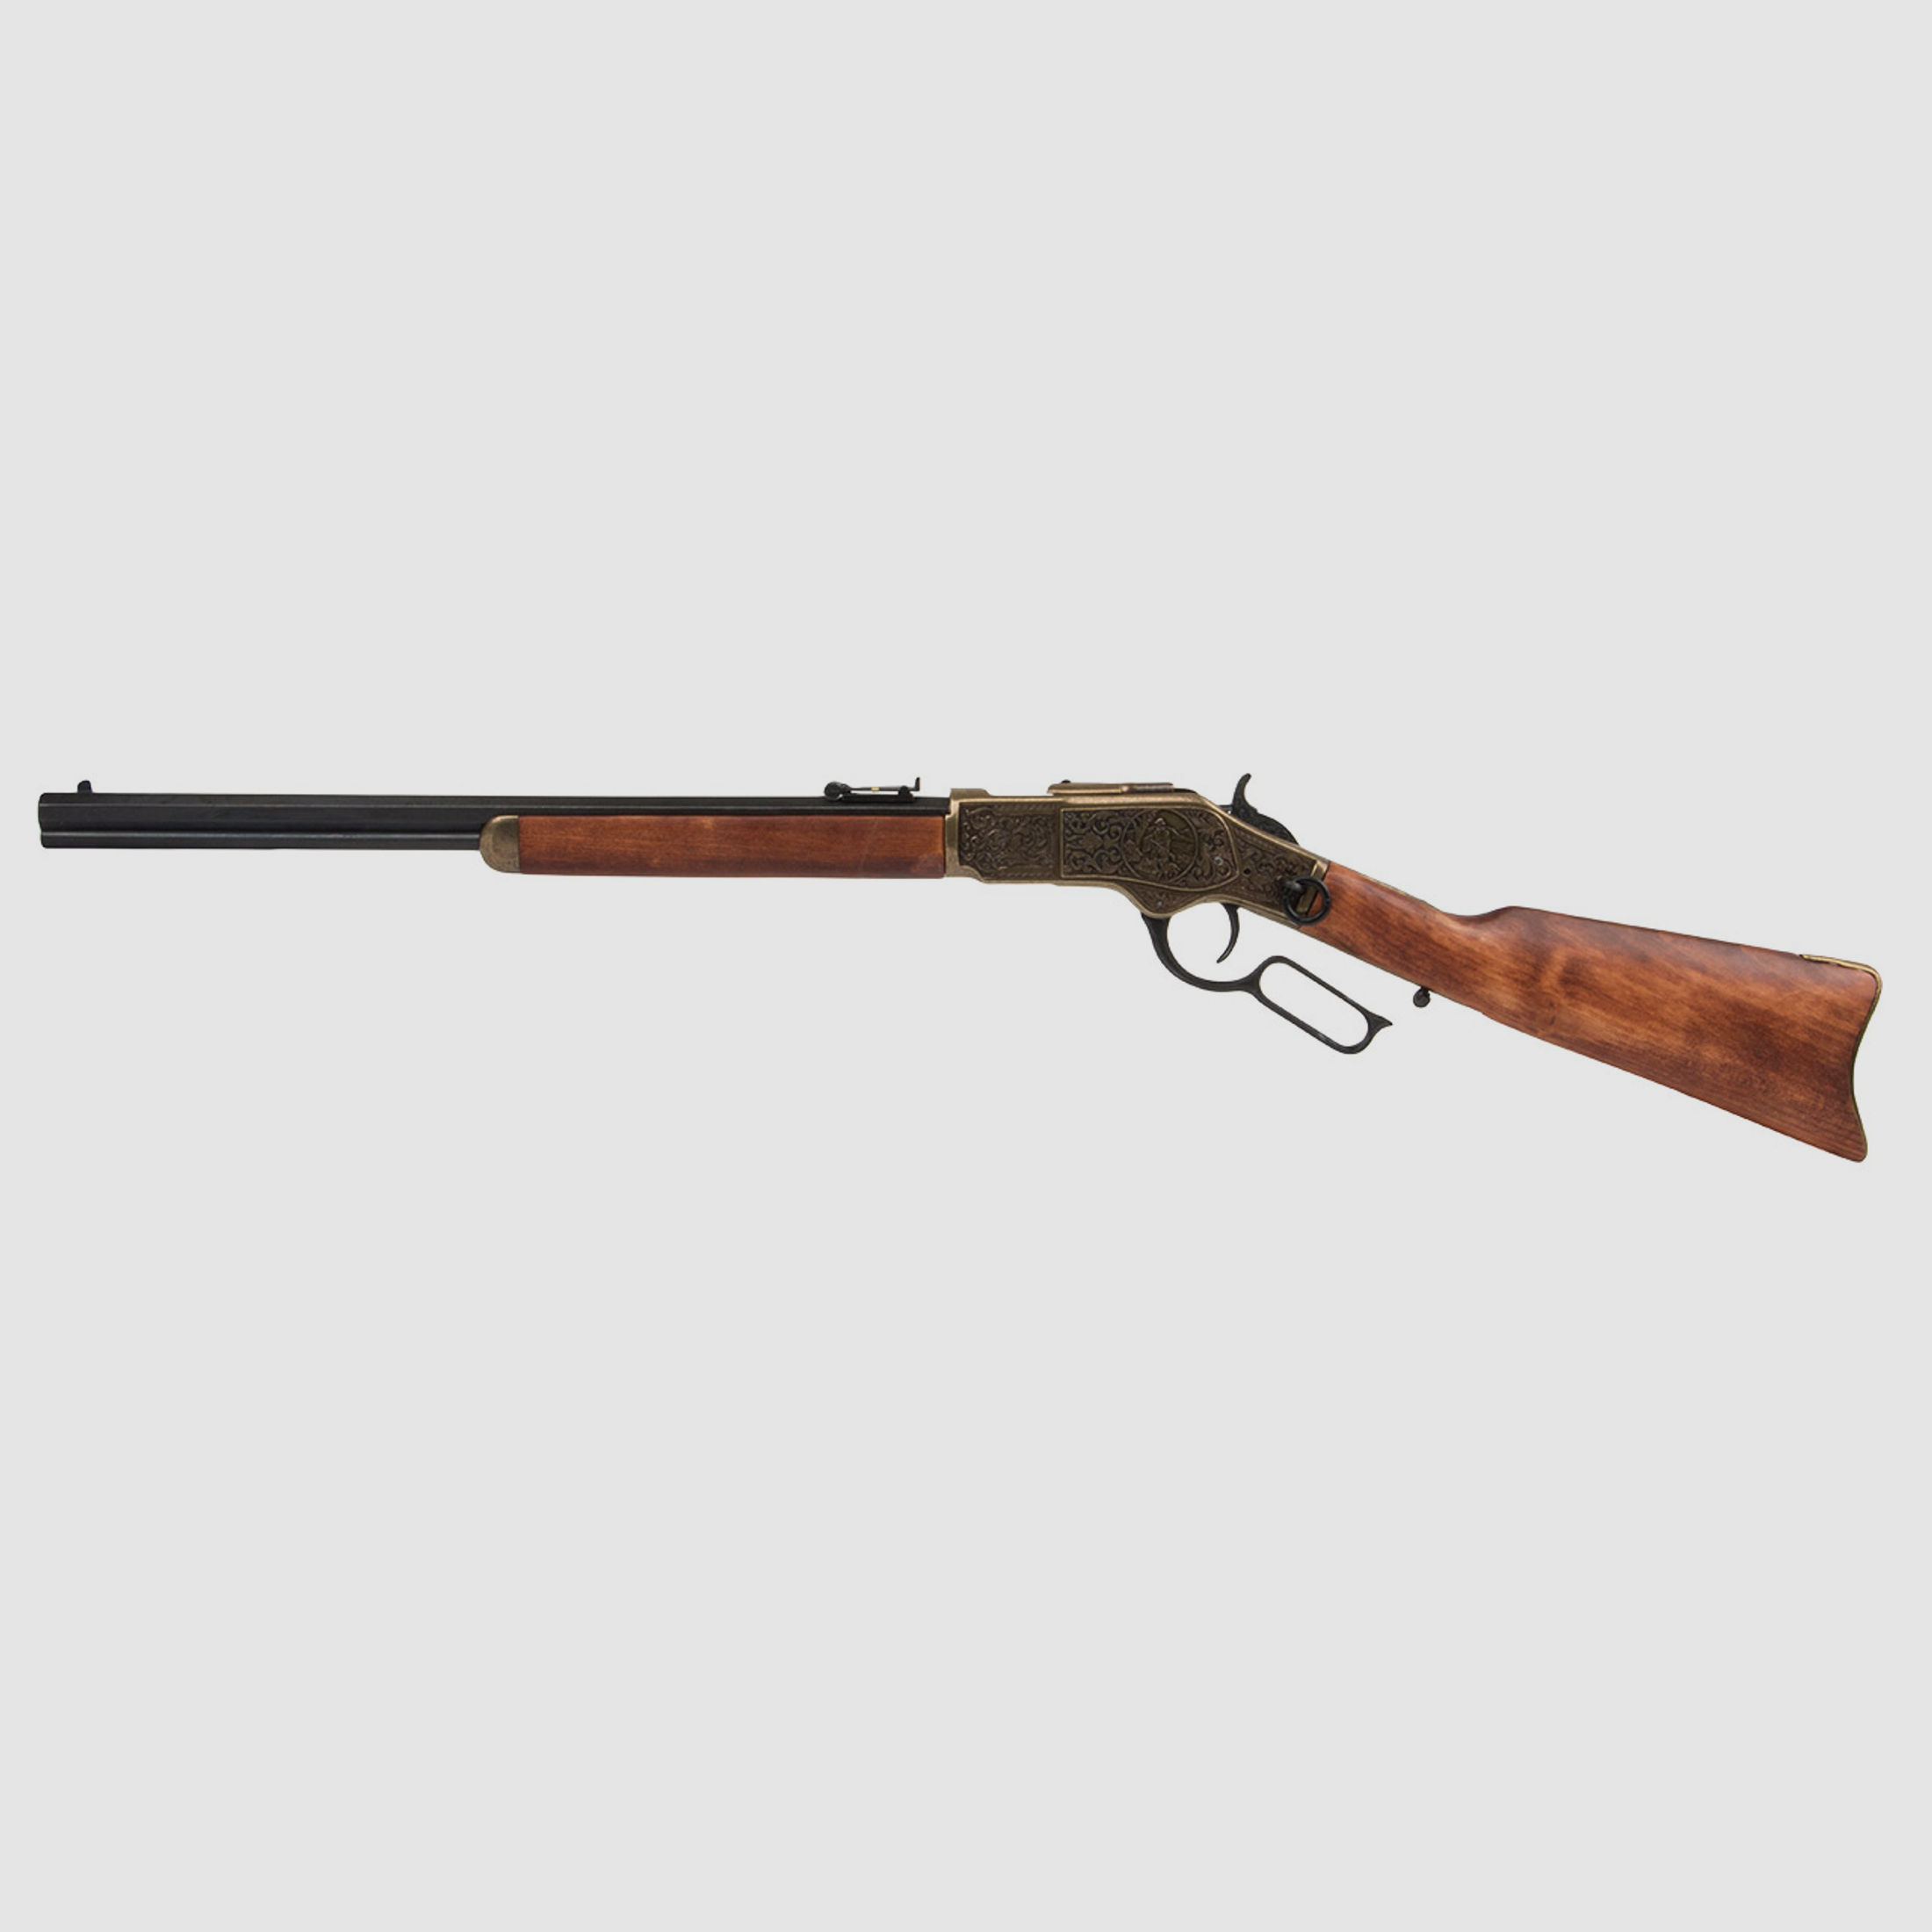 Deko Westerngewehr Denix Winchester Carbine lever action USA 1873 Kaliber .44 - .40 voll beweglich LĂ¤nge 99 cm messing